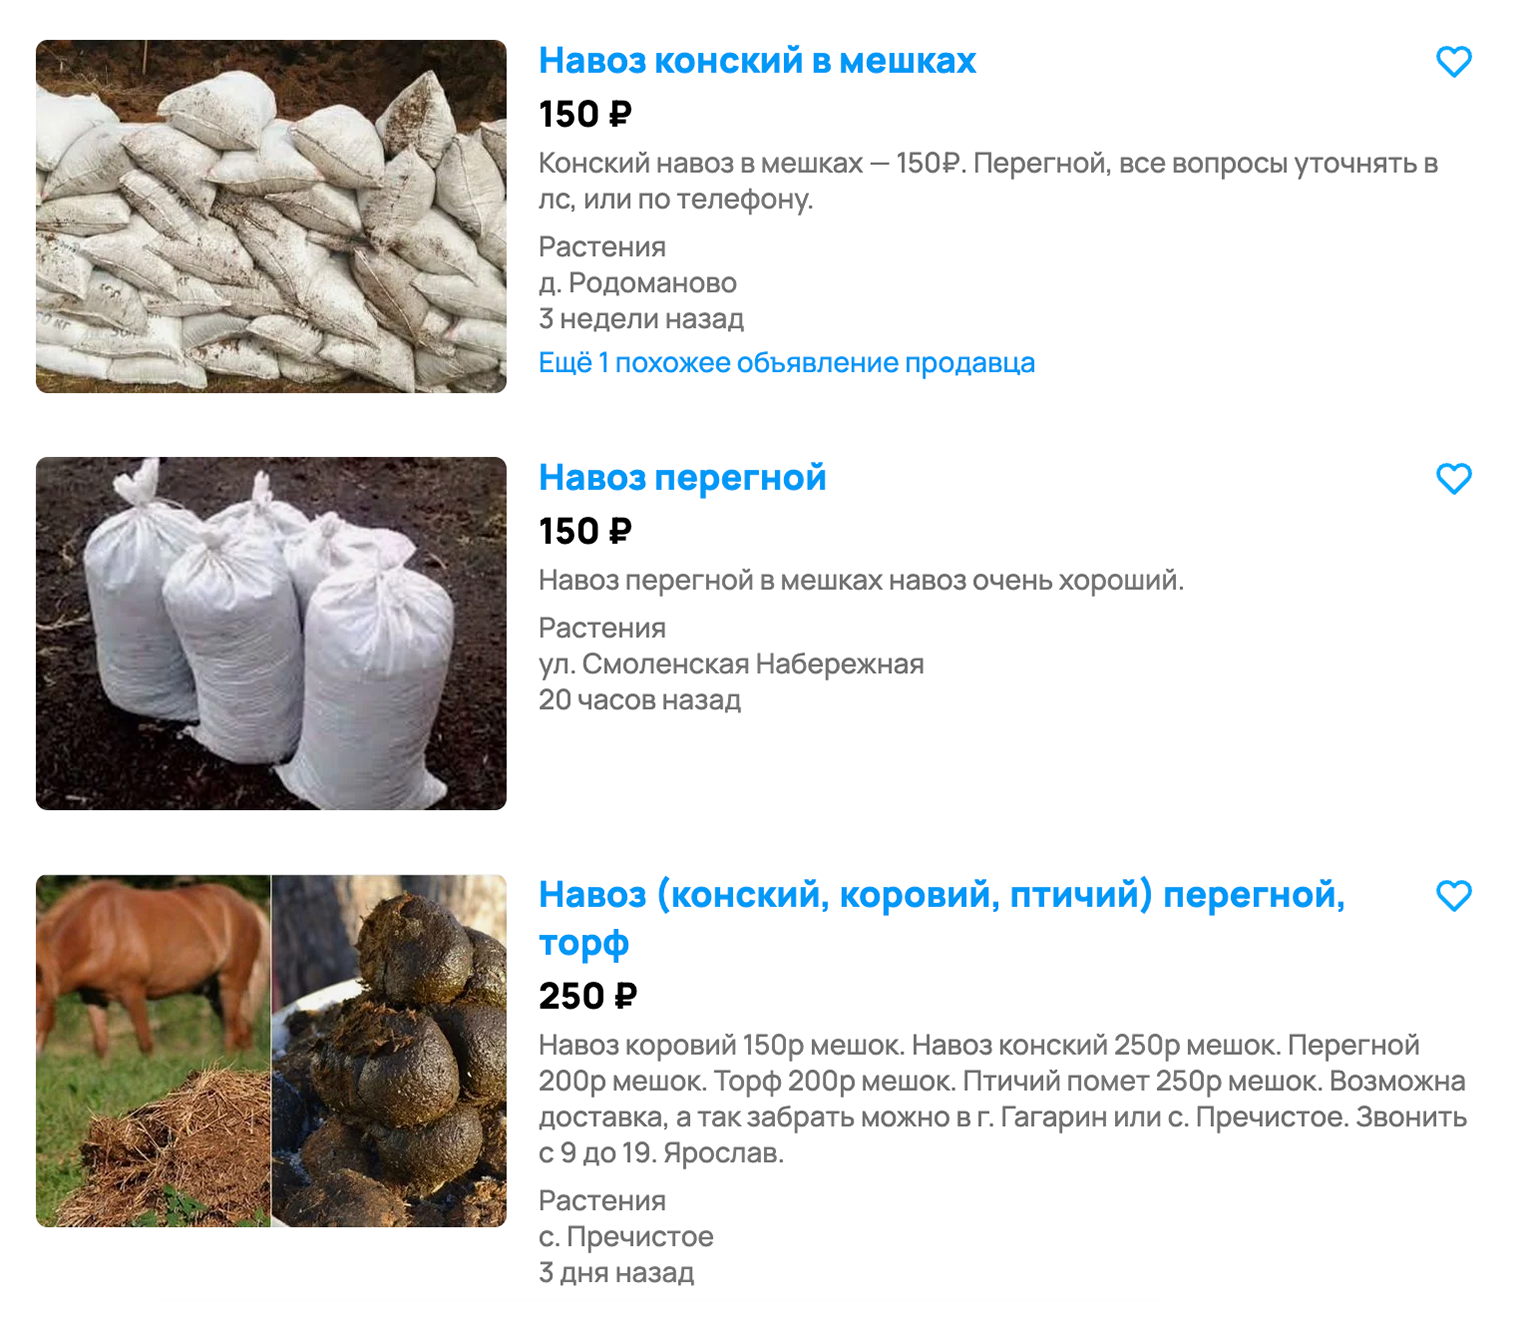 Органические удобрения можно заказать на «Авито» или купить по объявлению в садовом товариществе. Источник: avito.ru